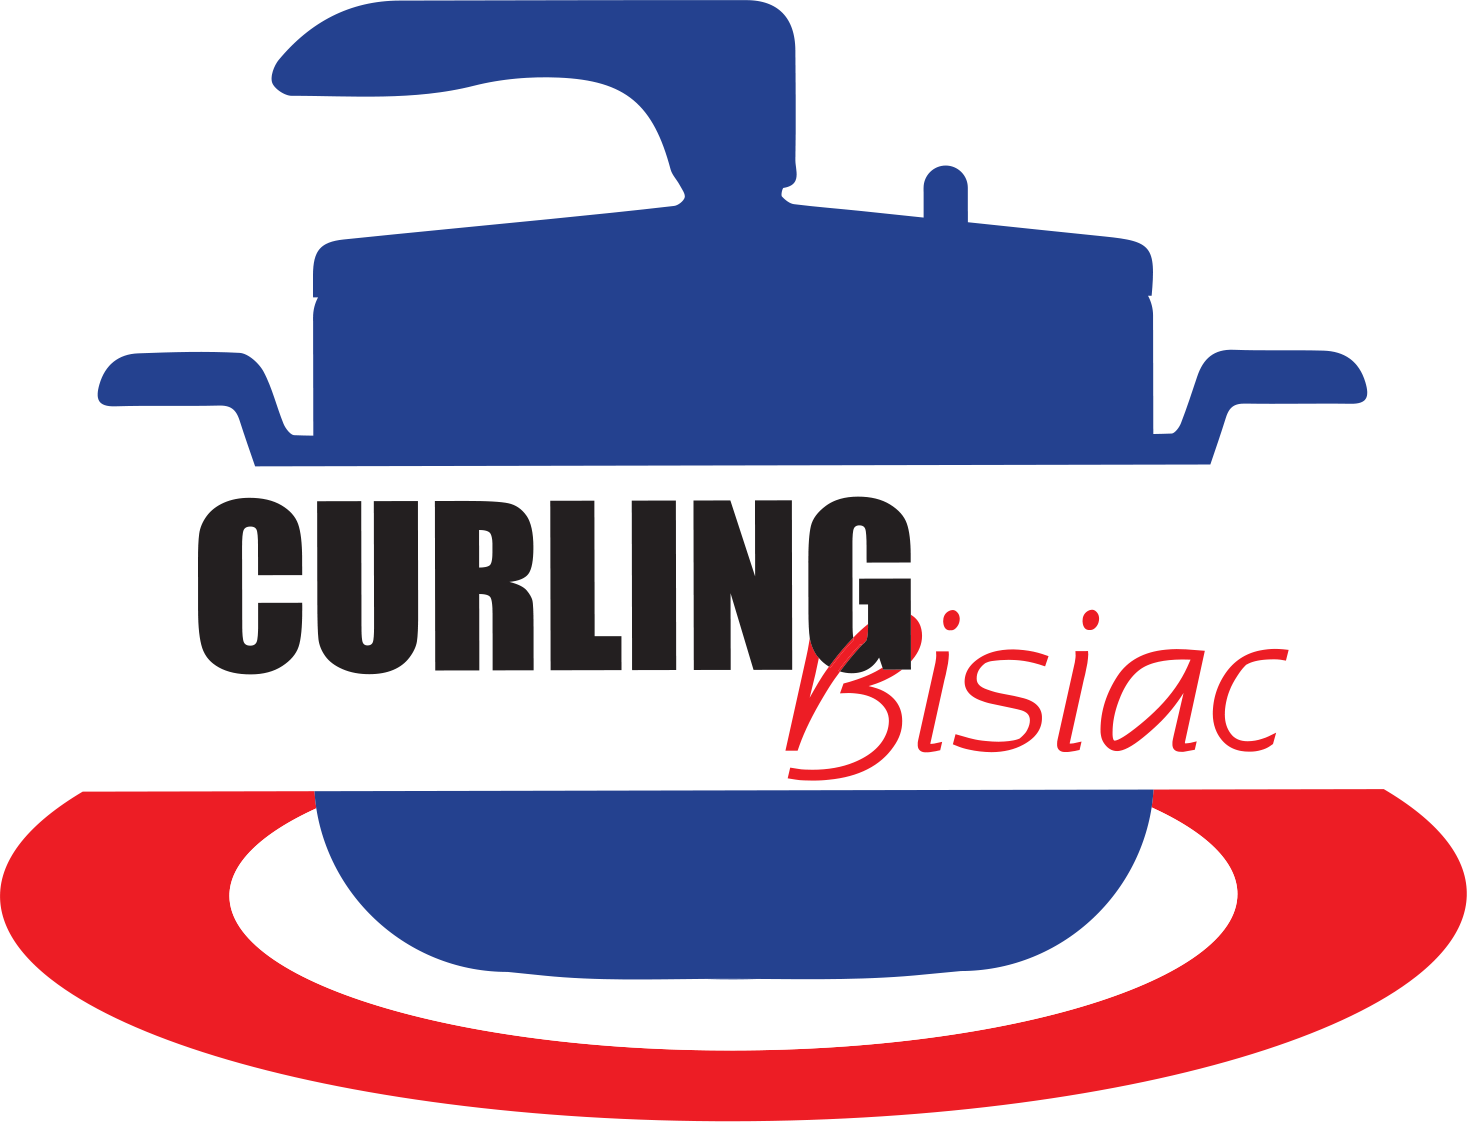 Curling Bisiàc